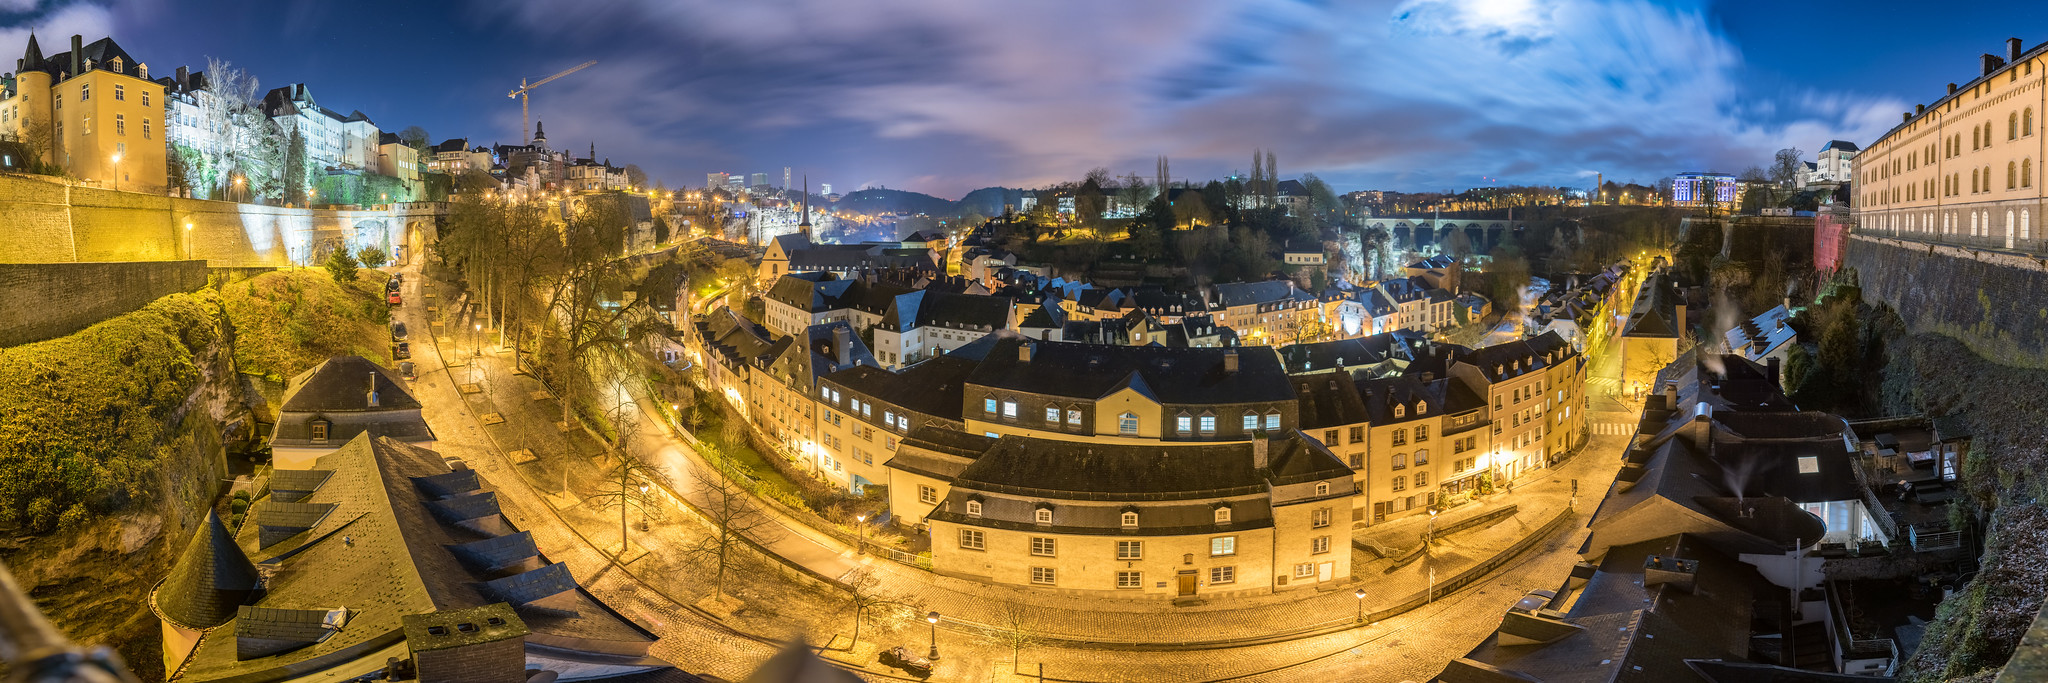 Luxembourg Grund night panorama